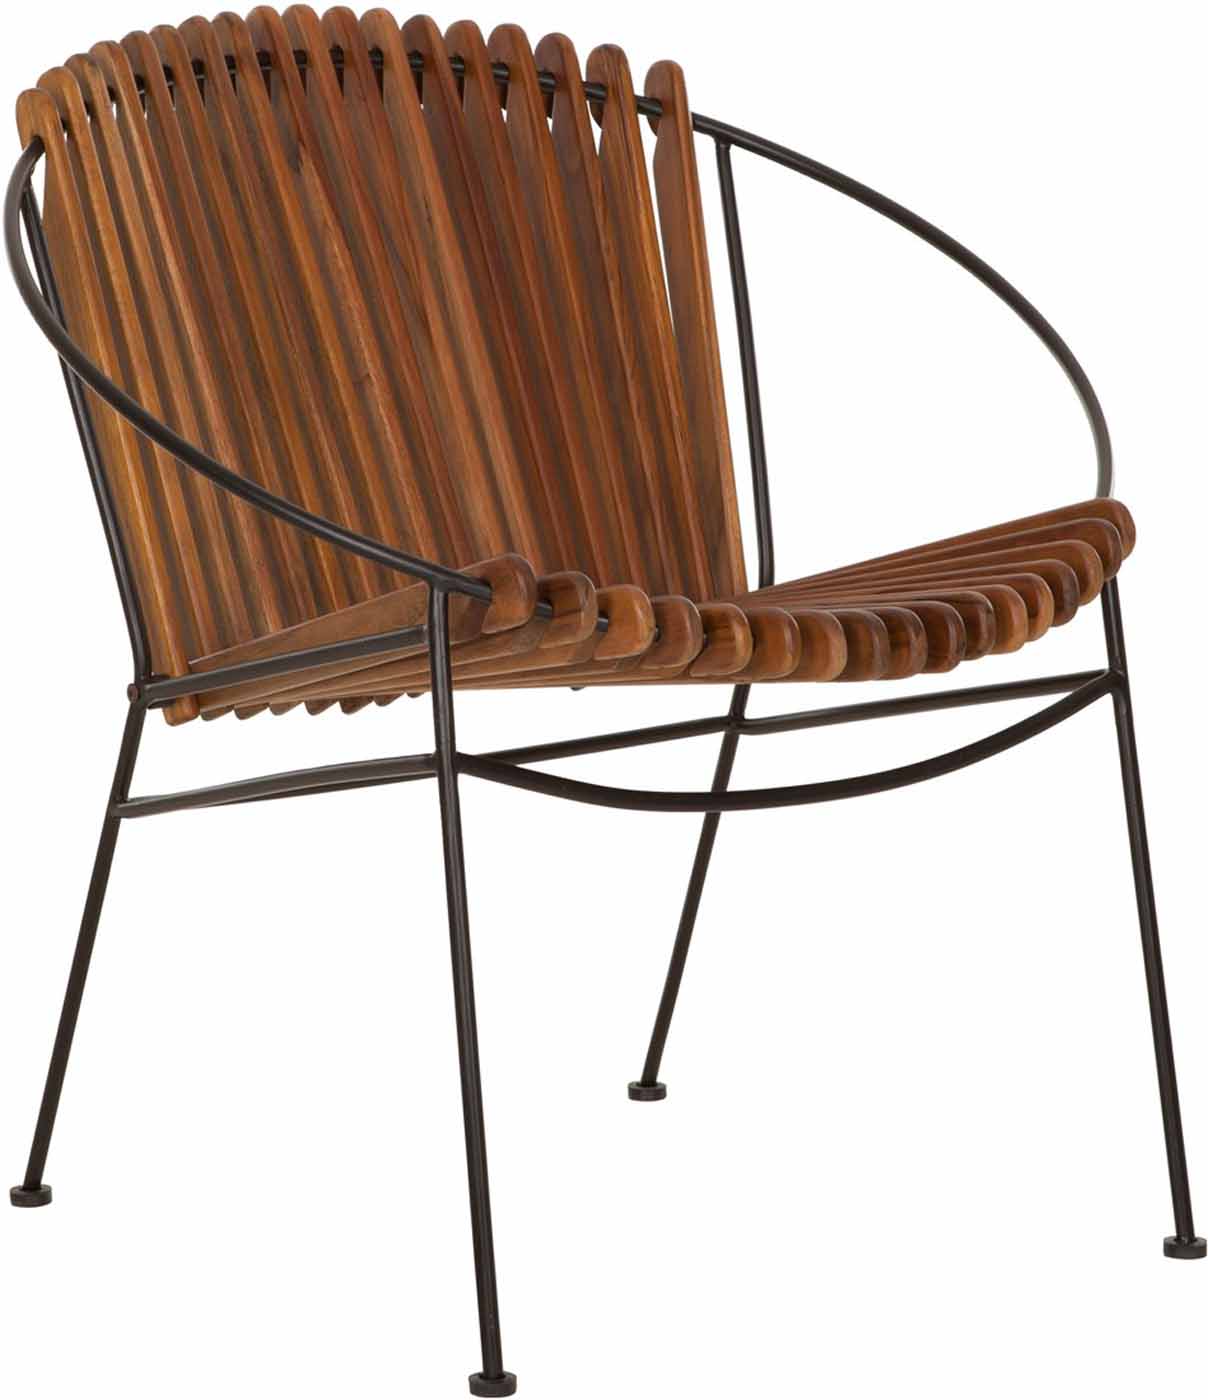 Wunderschöner Stuhl aus Teakholz in ausgefallenem Design